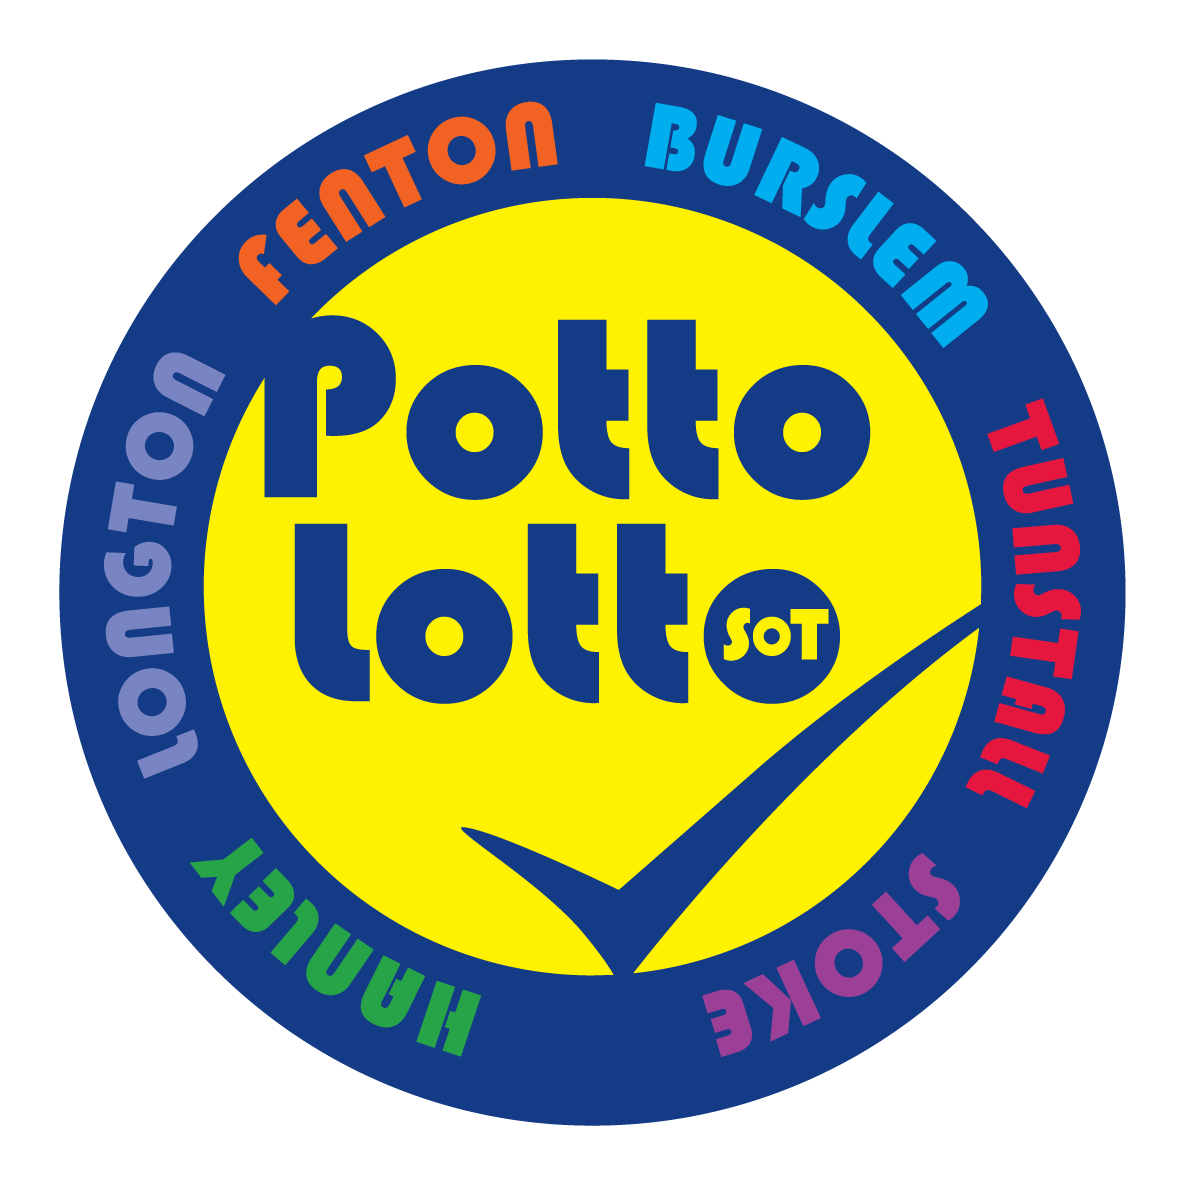 Potto-Lotto-SOT-2022